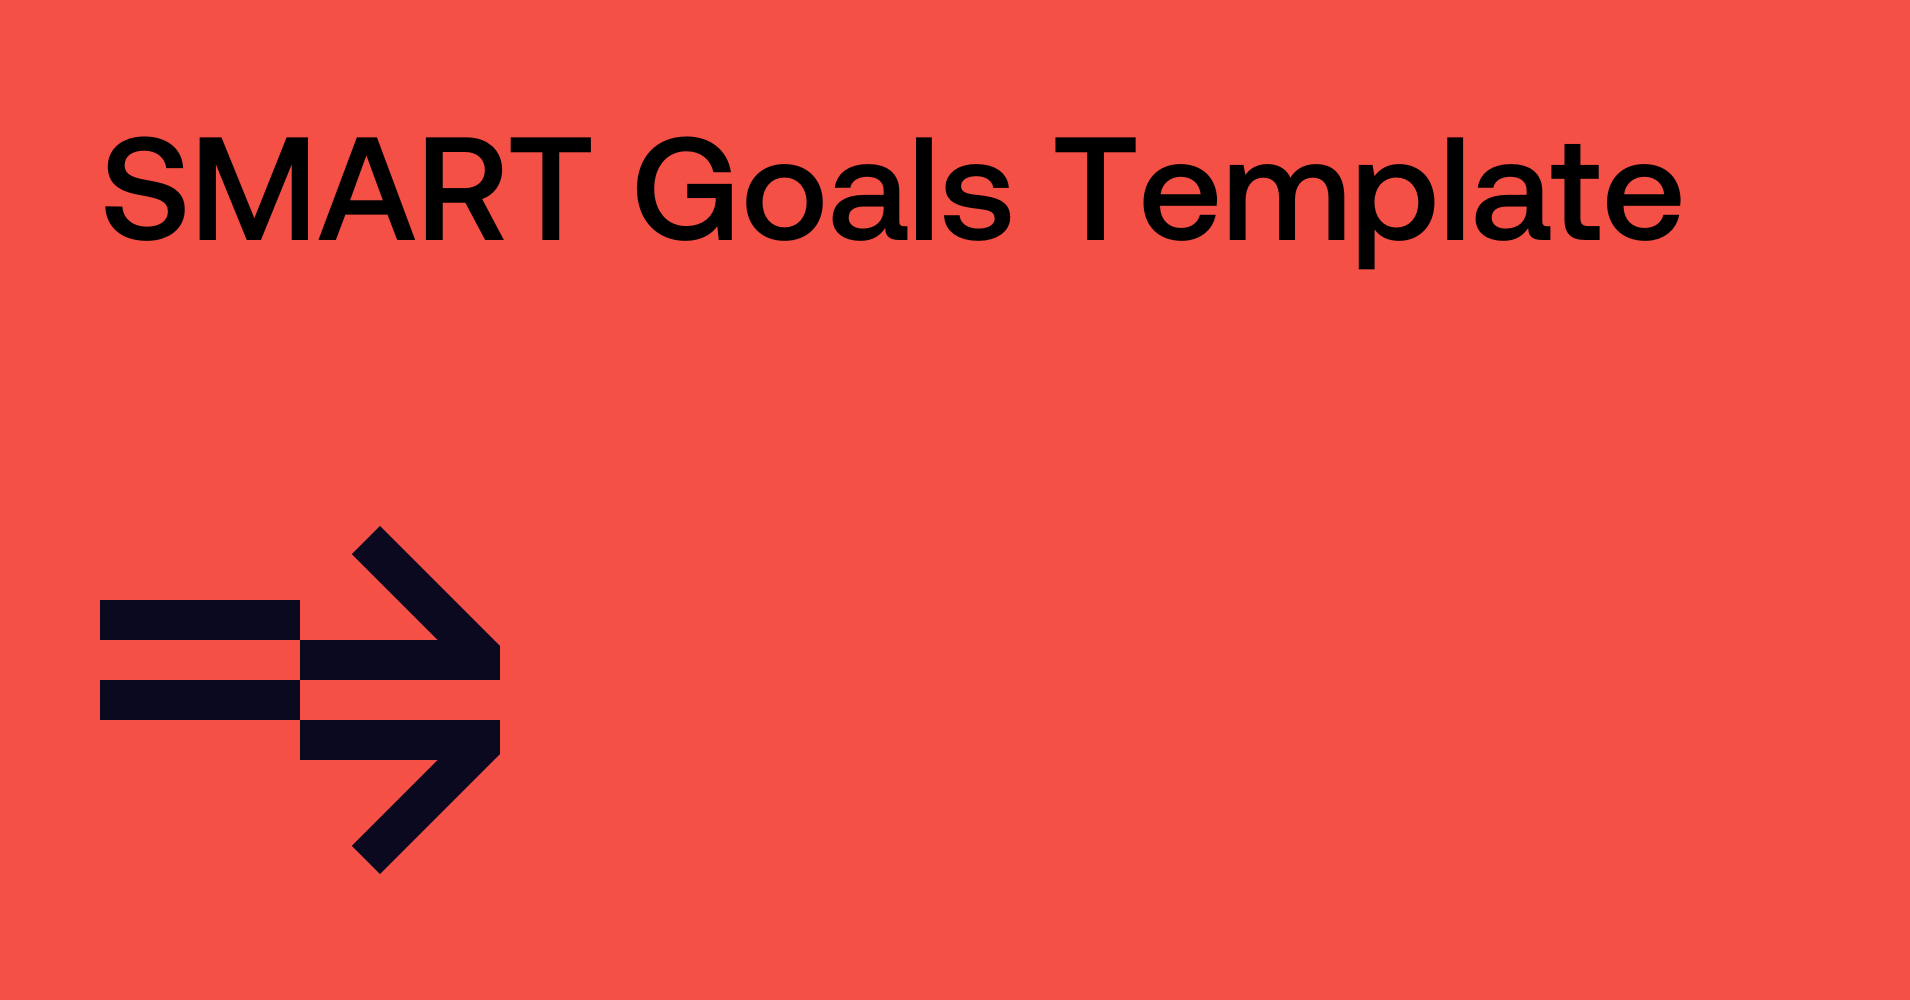 SMART Goals Template